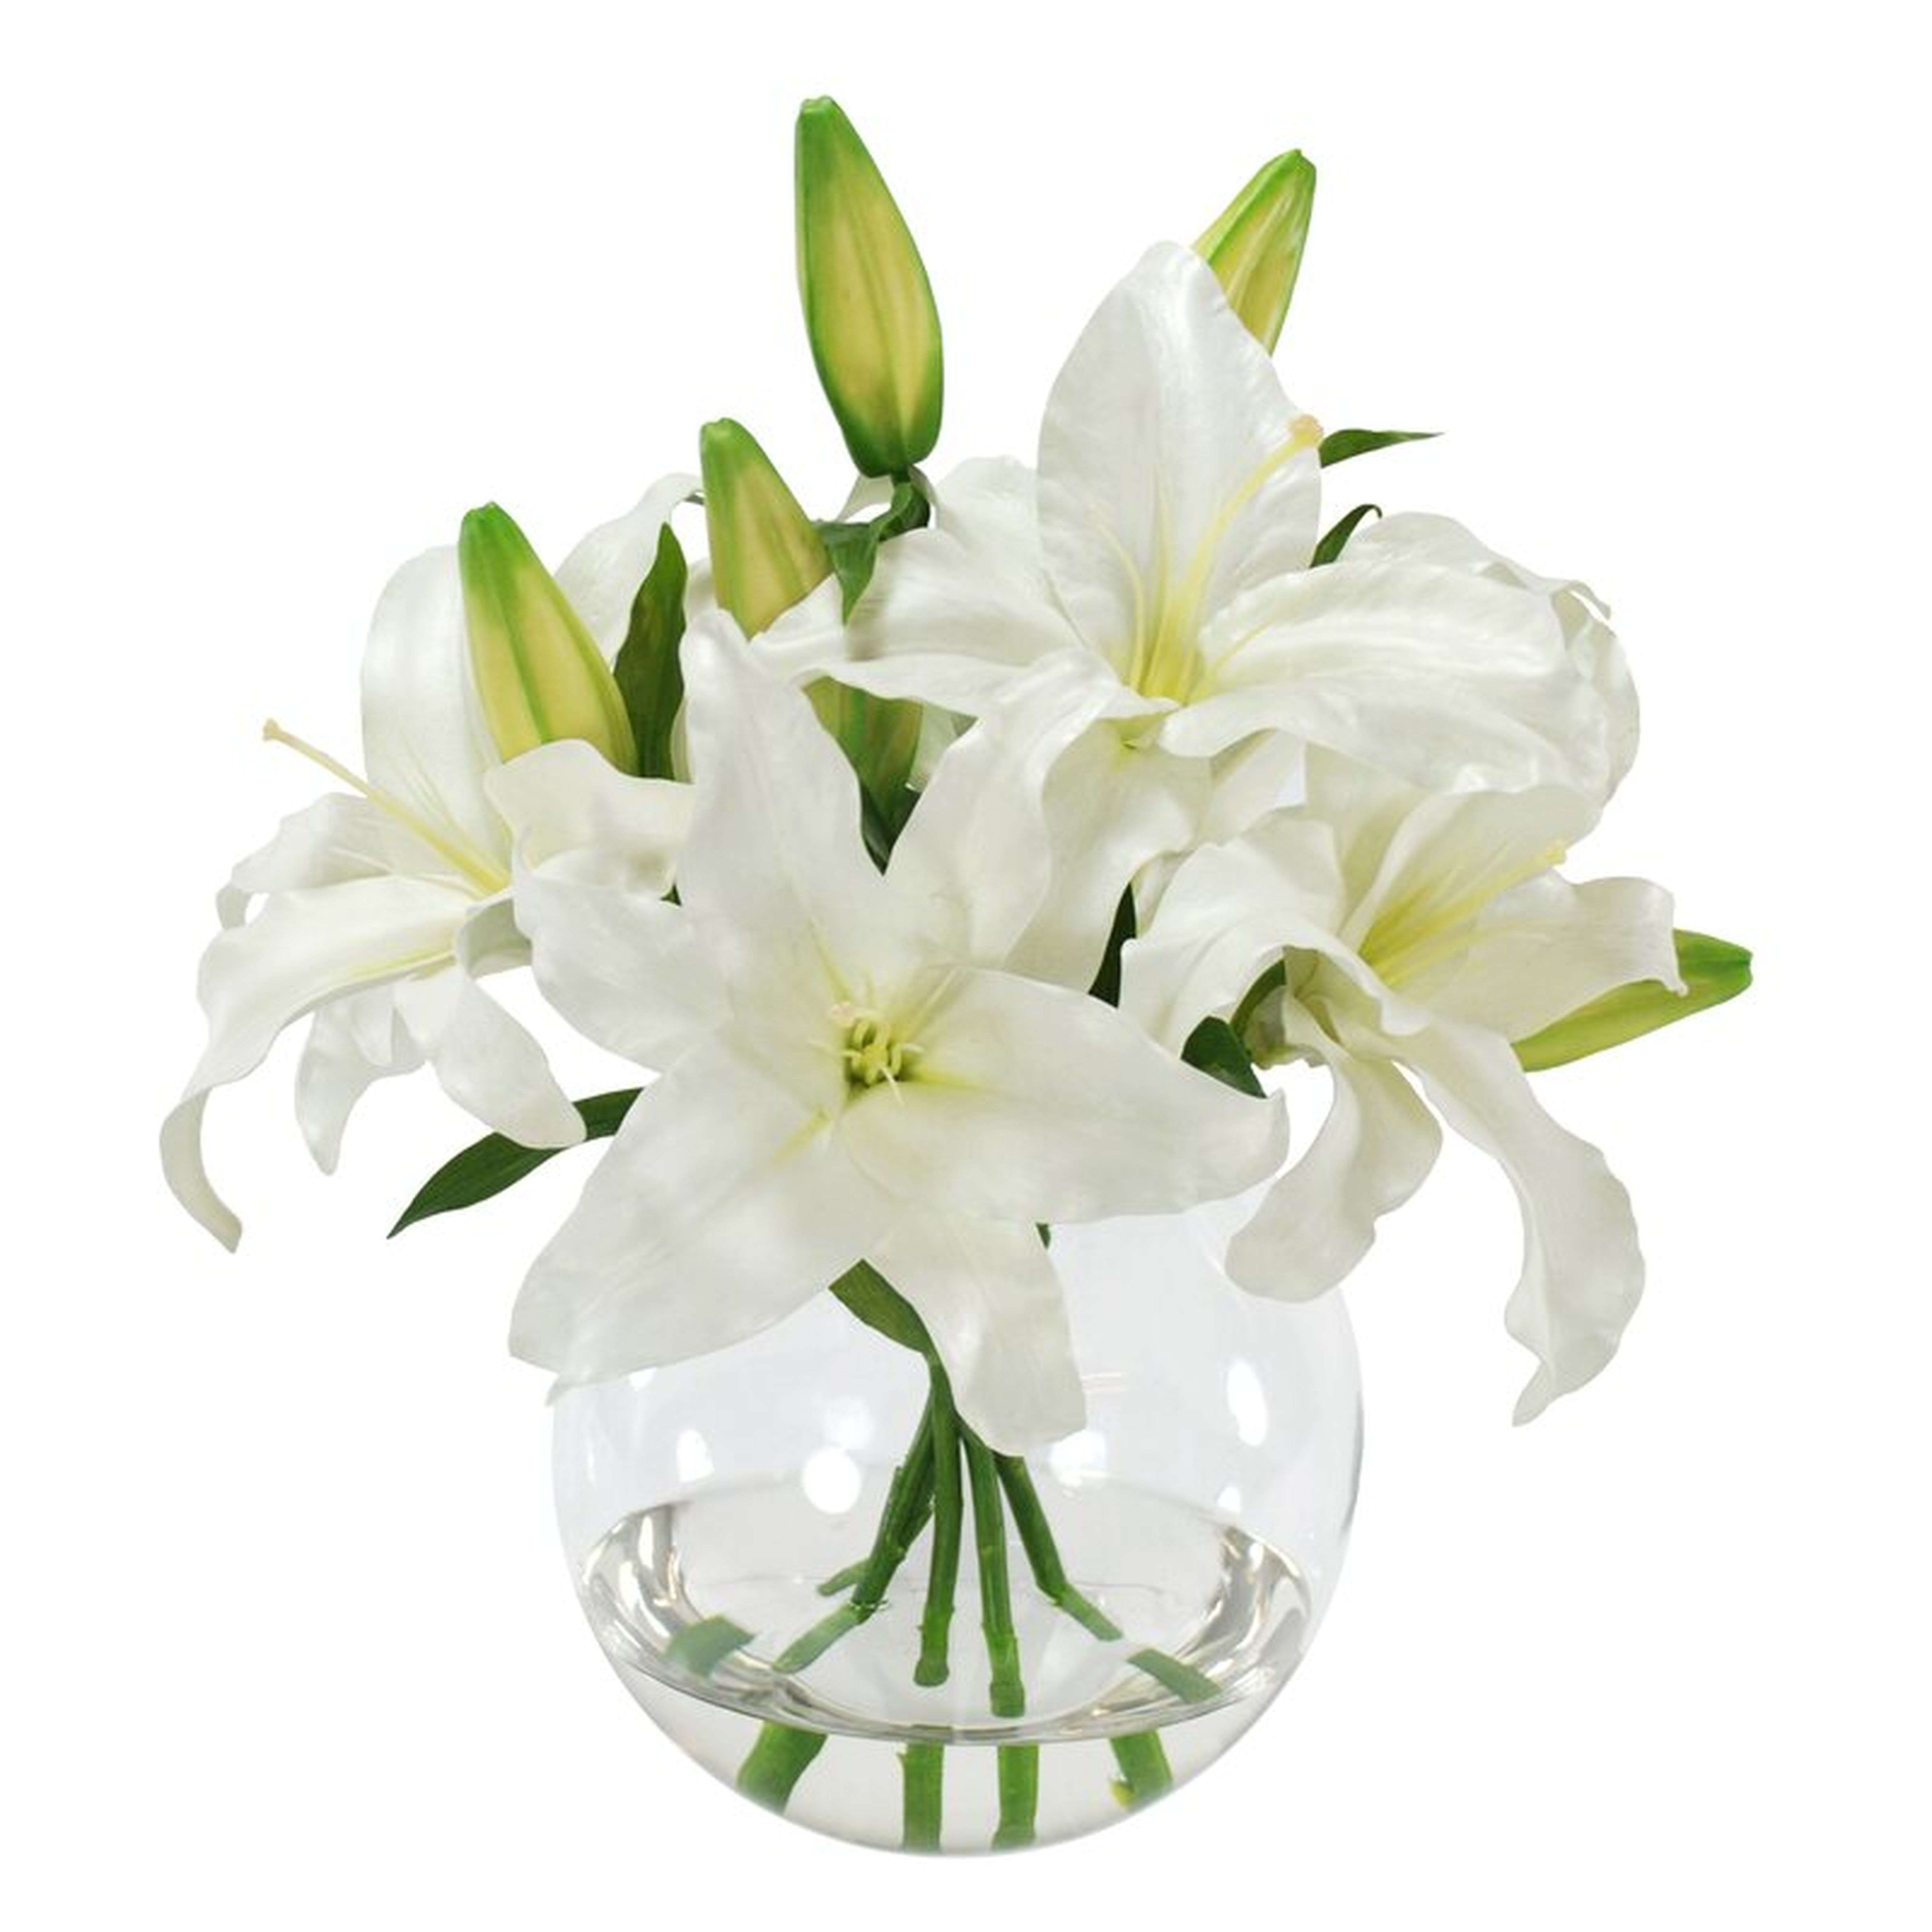 Faux Casablanca Lily Floral Arrangement in Glass Vase - Perigold